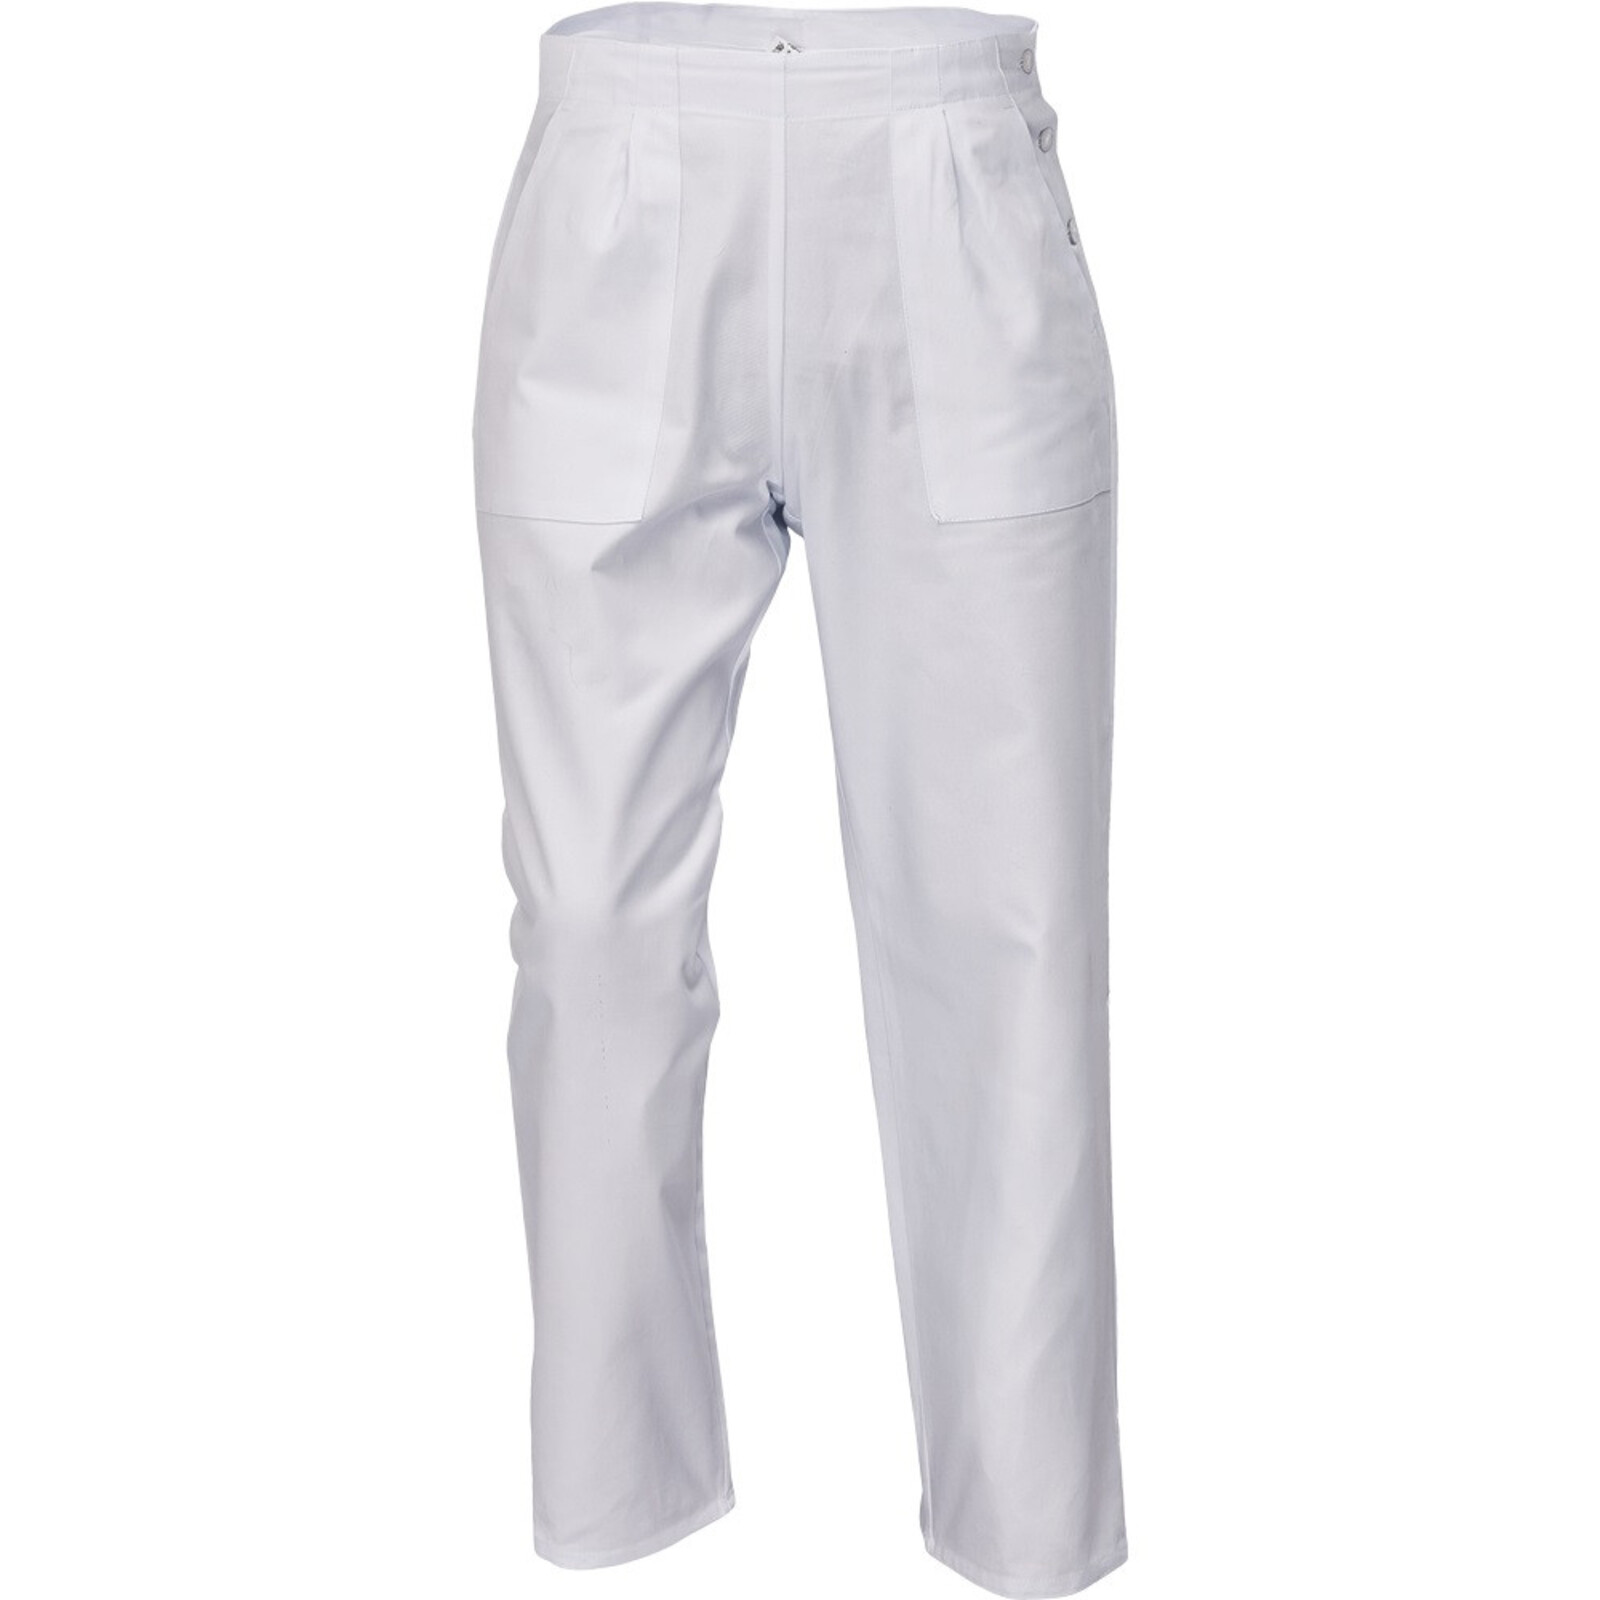 Dámske biele nohavice Apus Lady - veľkosť: 60